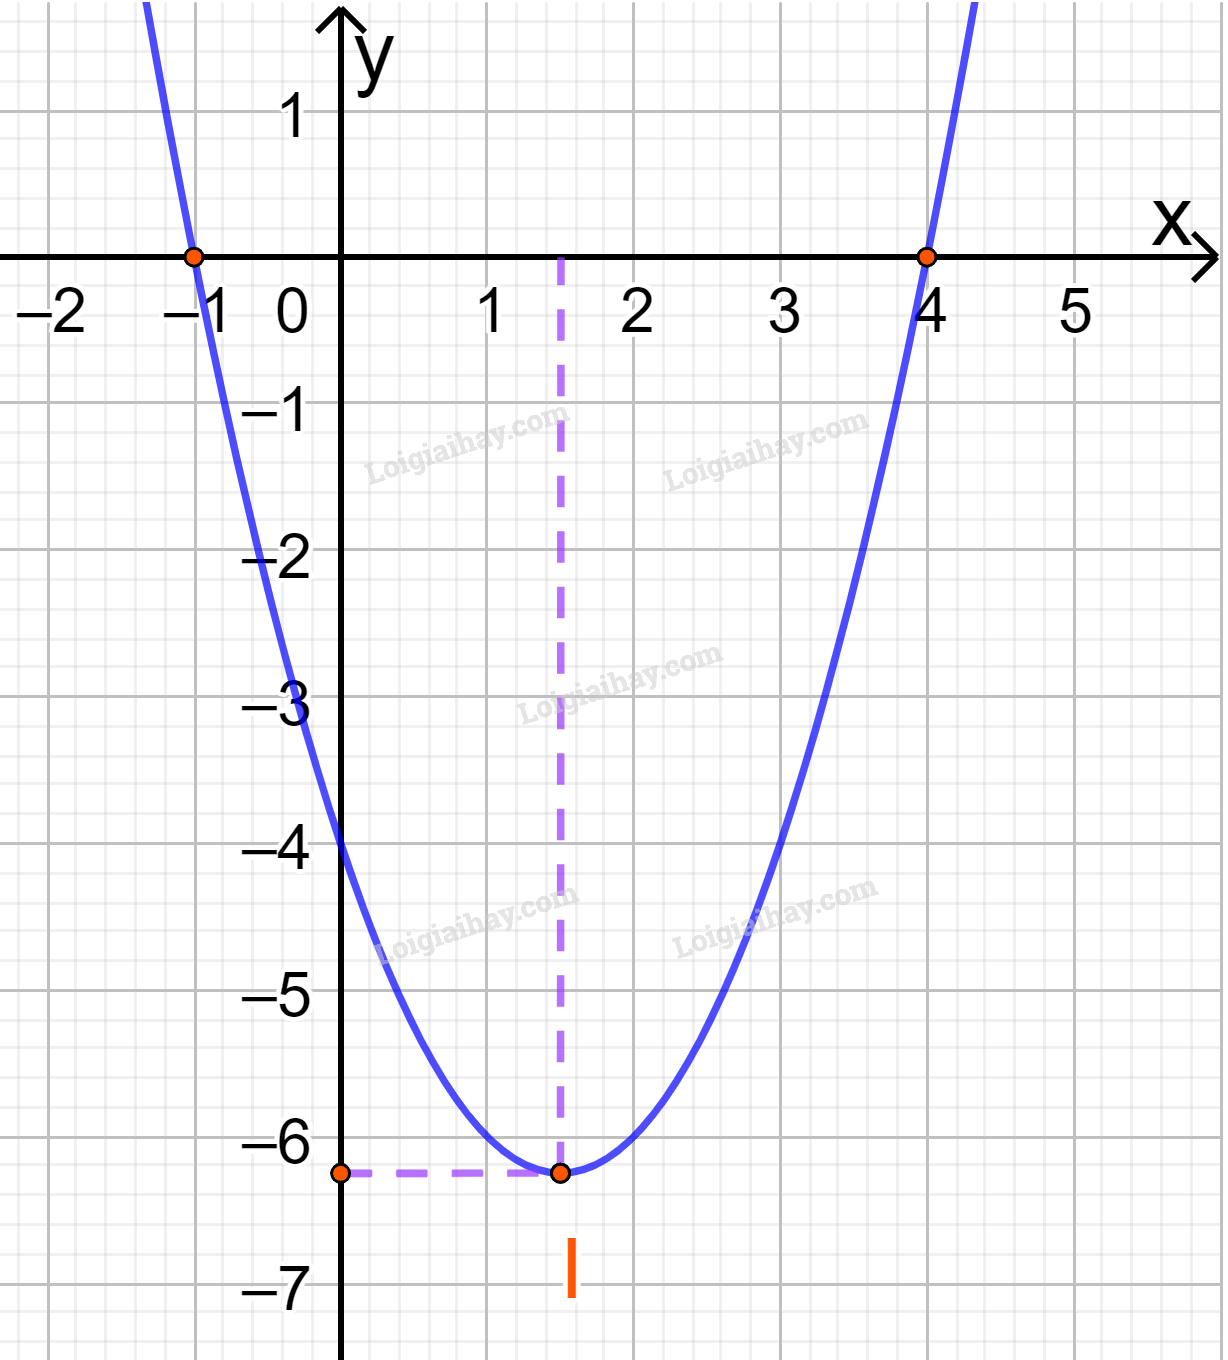 Diện tích hình phẳng - Parabol - Diện tích của các hình phẳng có thể được tính toán bằng việc áp dụng các công thức toán học phù hợp. Đặc biệt, trong trường hợp của Parabol, việc tính toán diện tích sẽ đòi hỏi một số kiến thức và kỹ năng đặc biệt. Hãy cùng khám phá cách tính toán diện tích của Parabol qua các ví dụ thực tế.